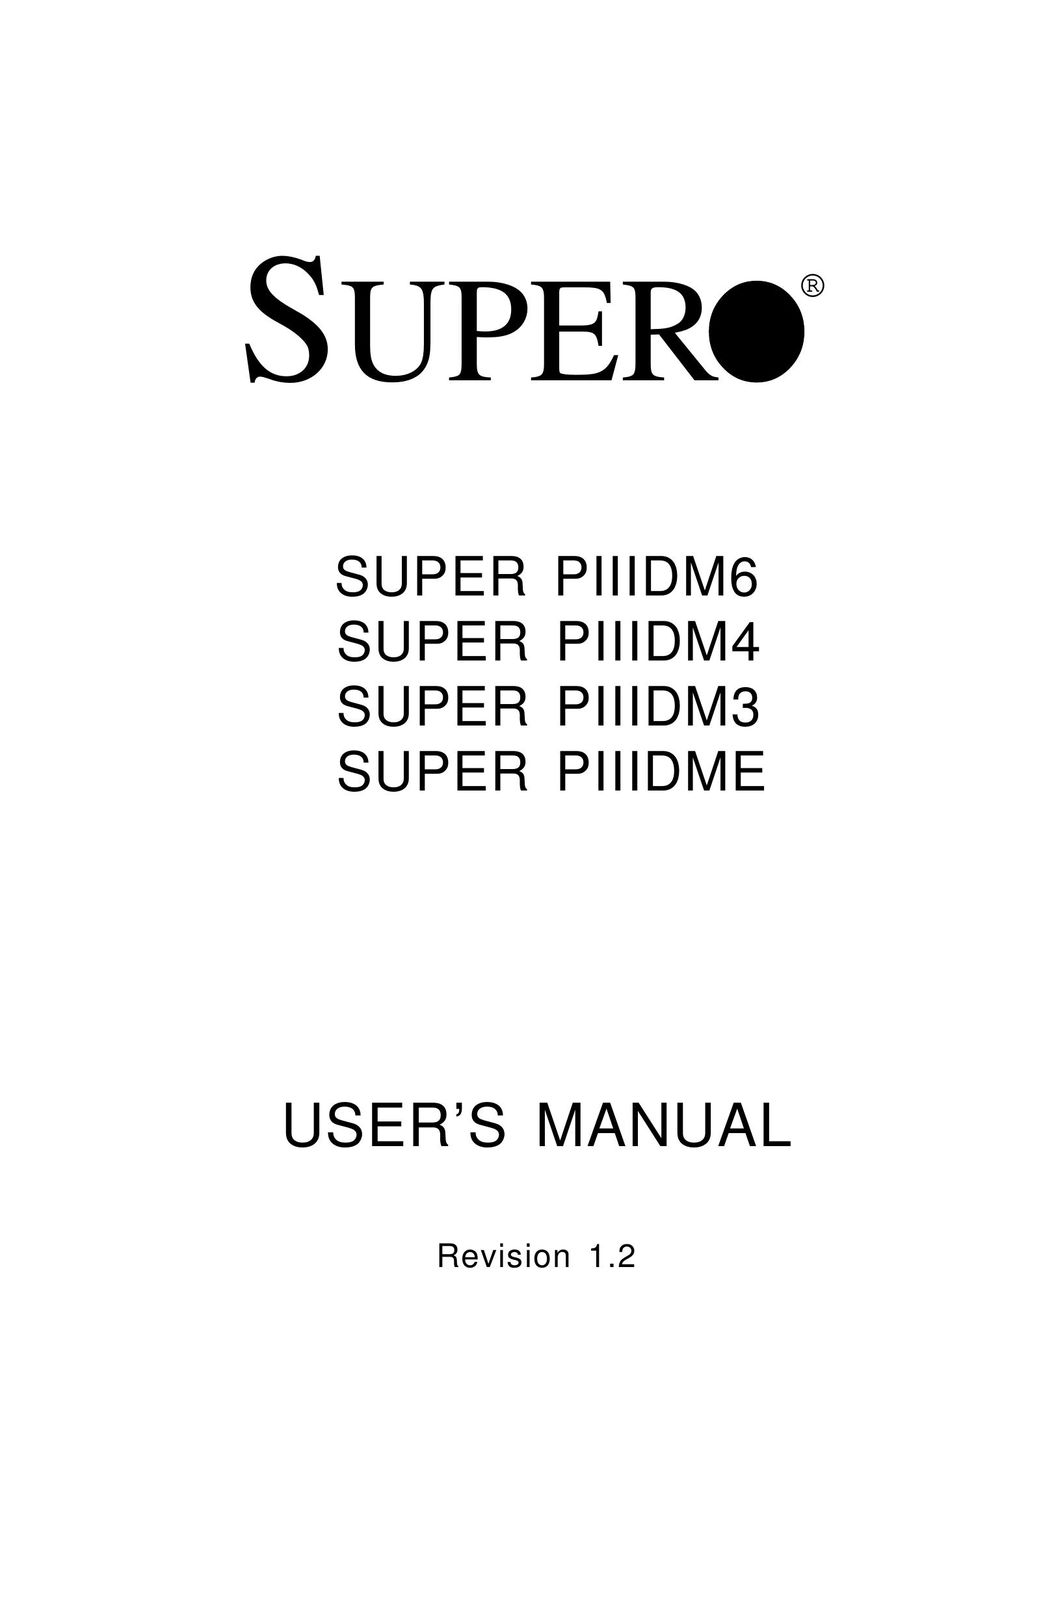 SUPER MICRO Computer Supero Computer Hardware User Manual